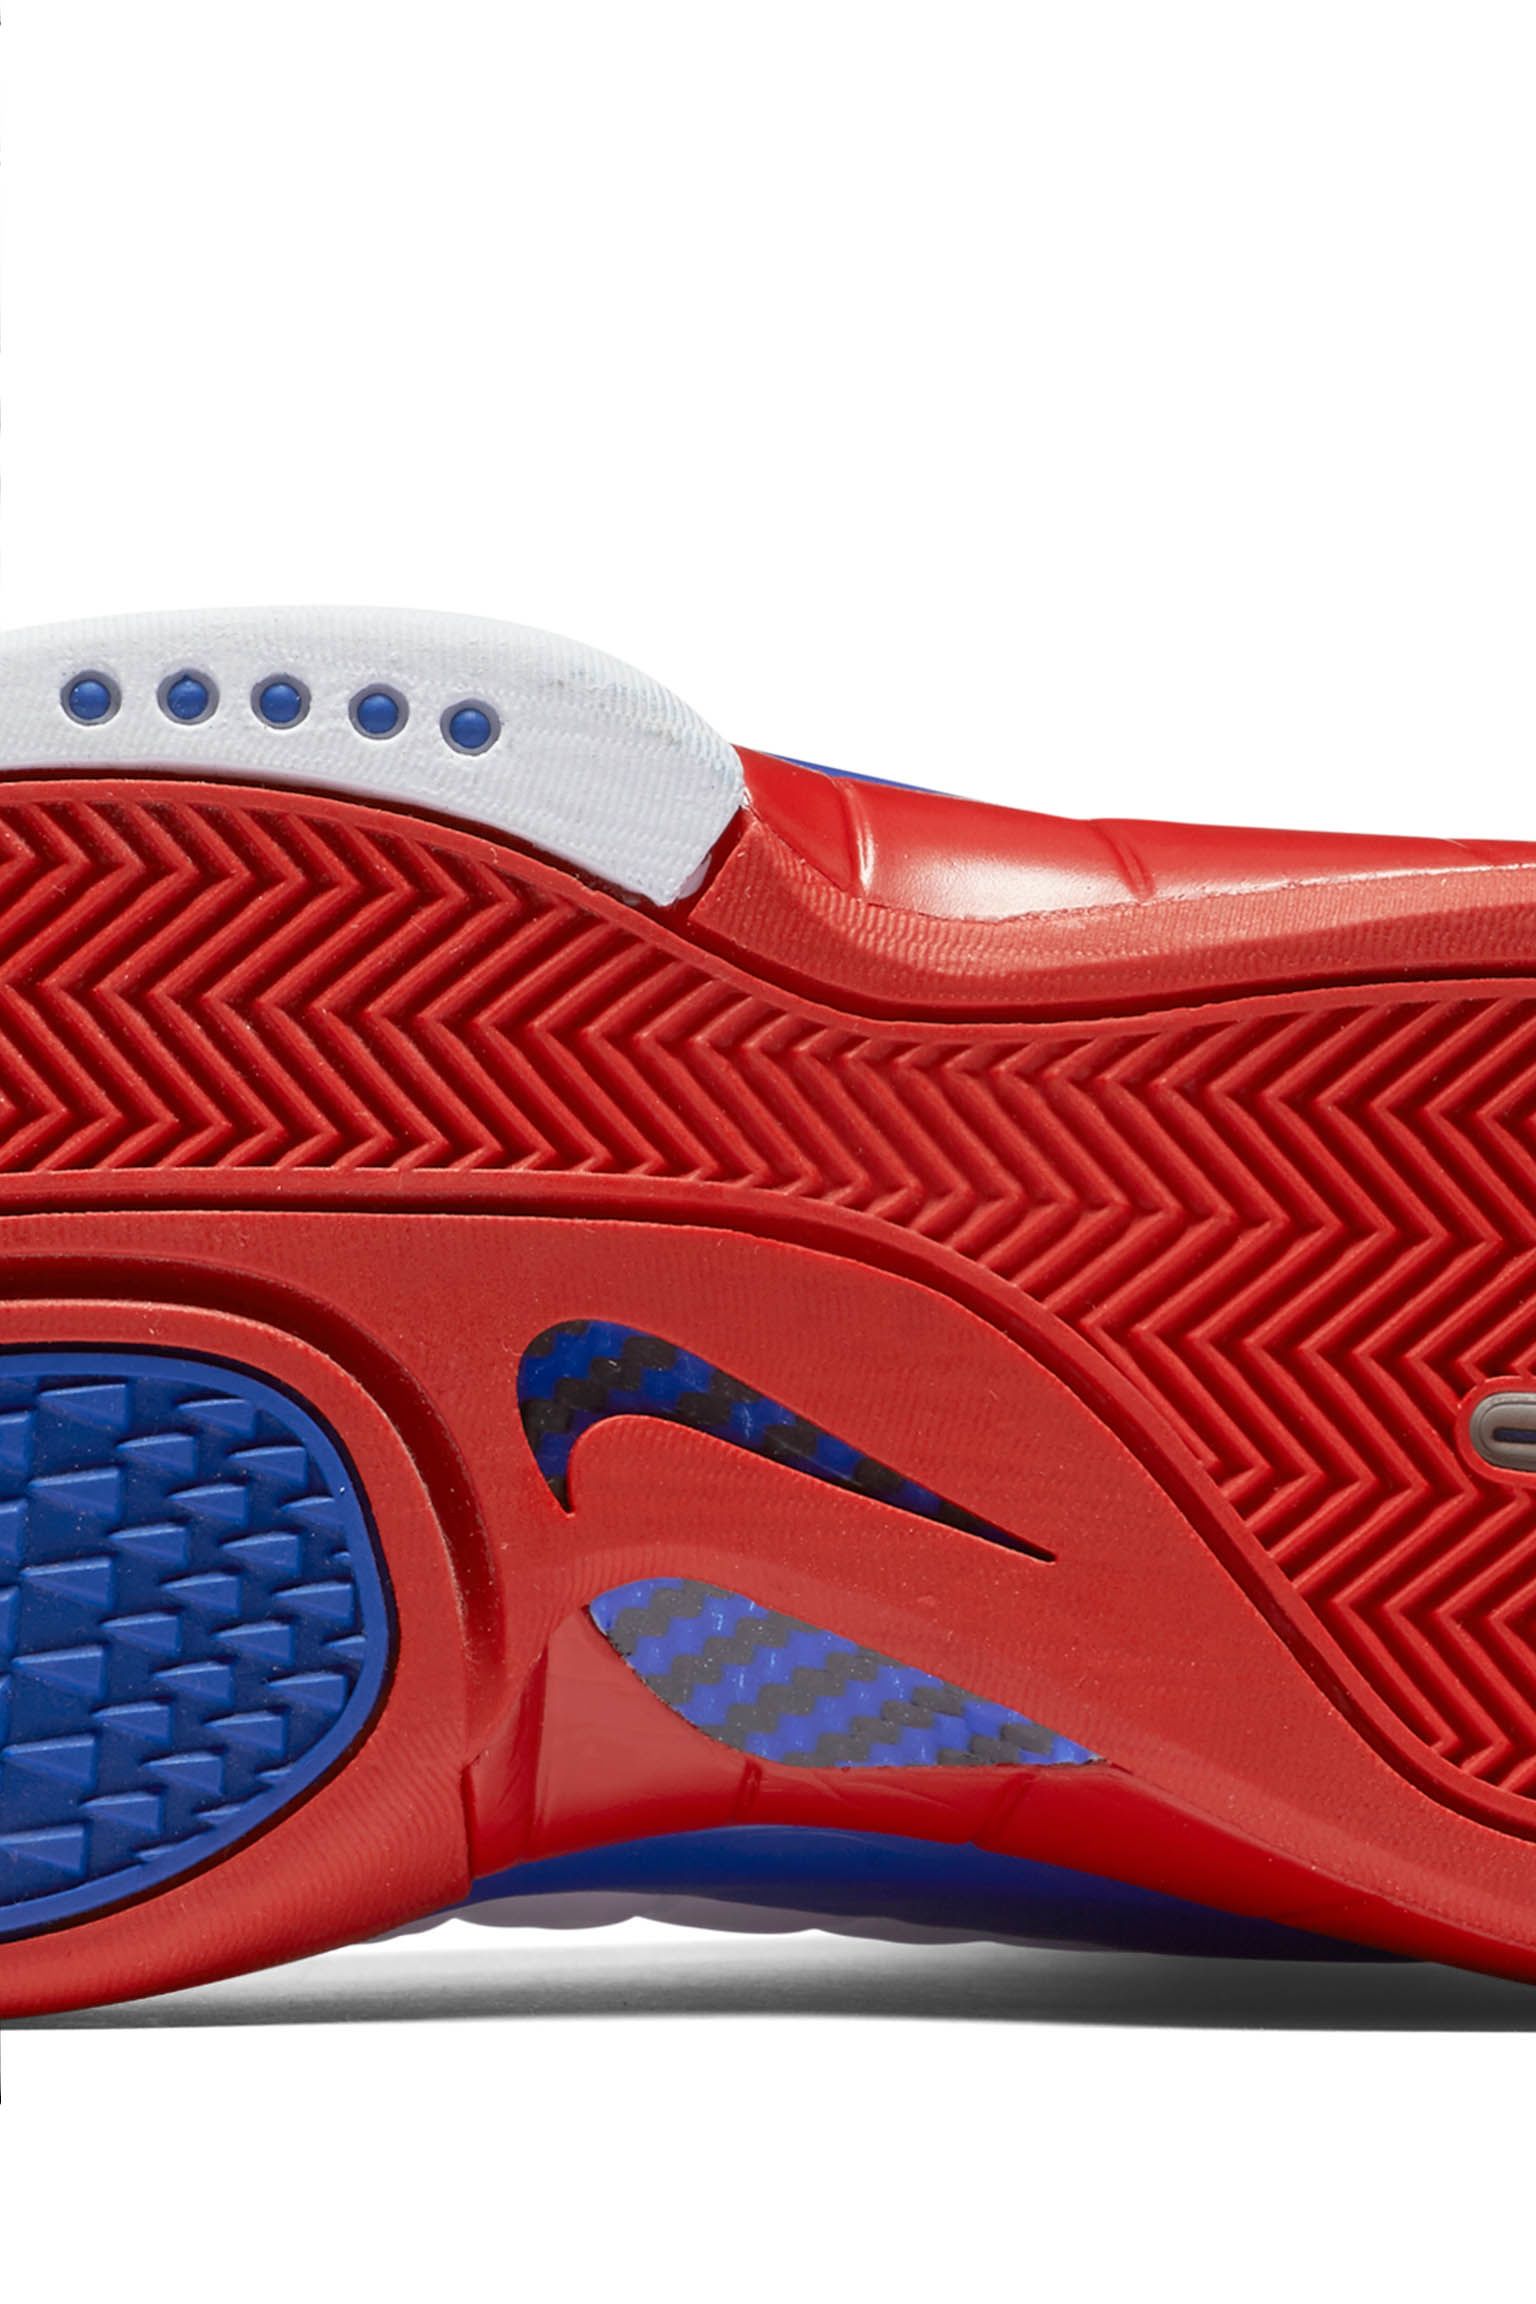 【新作からSALEアイテム等お得な商品満載】 Nike HUARACHE kobe 2k4 シューズ(男性用)